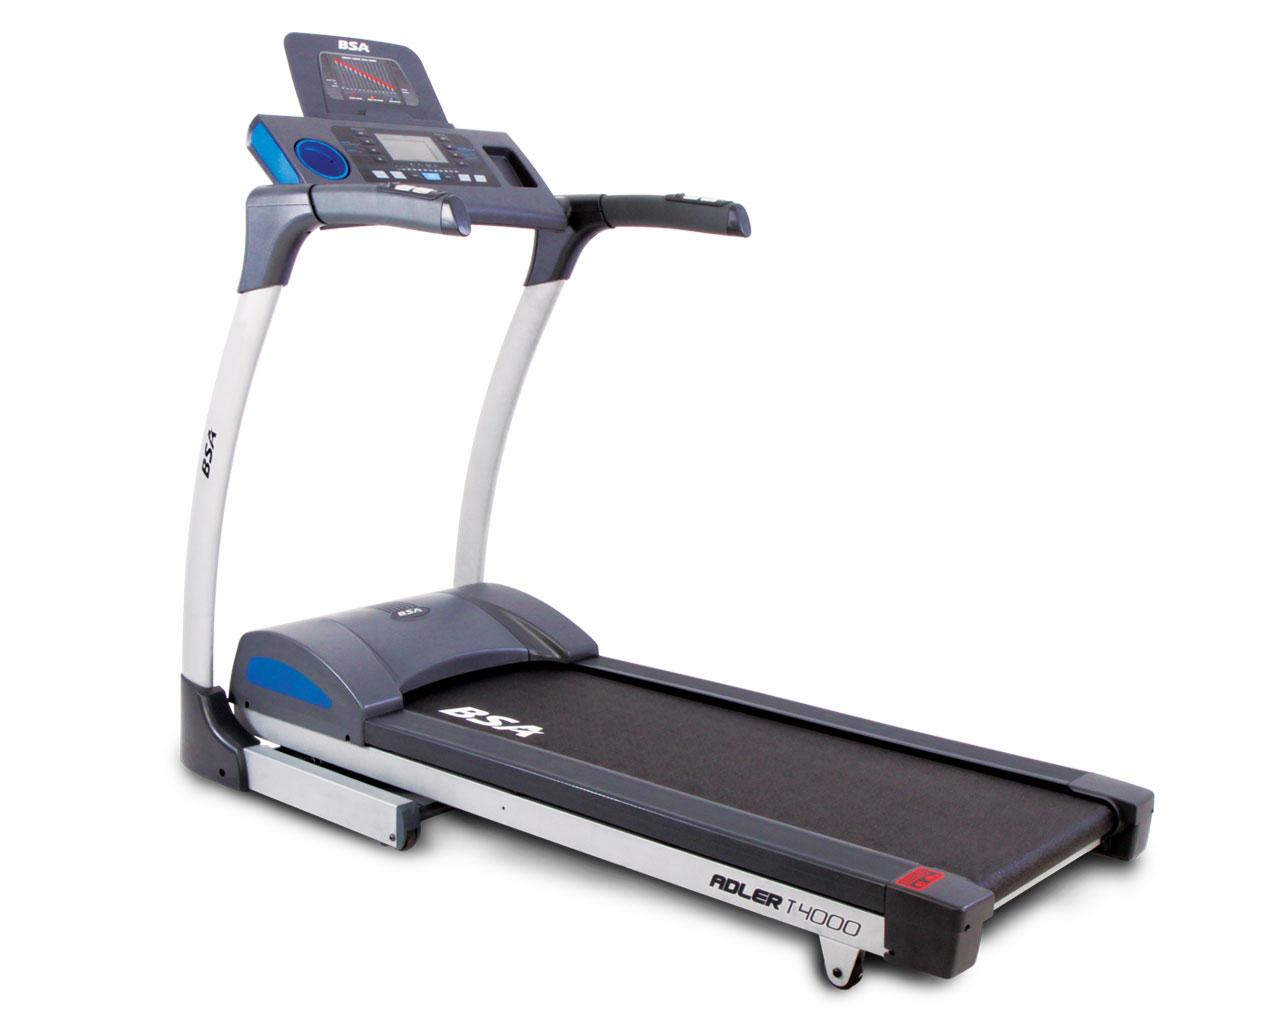 BSA Adler T 4000 Treadmill